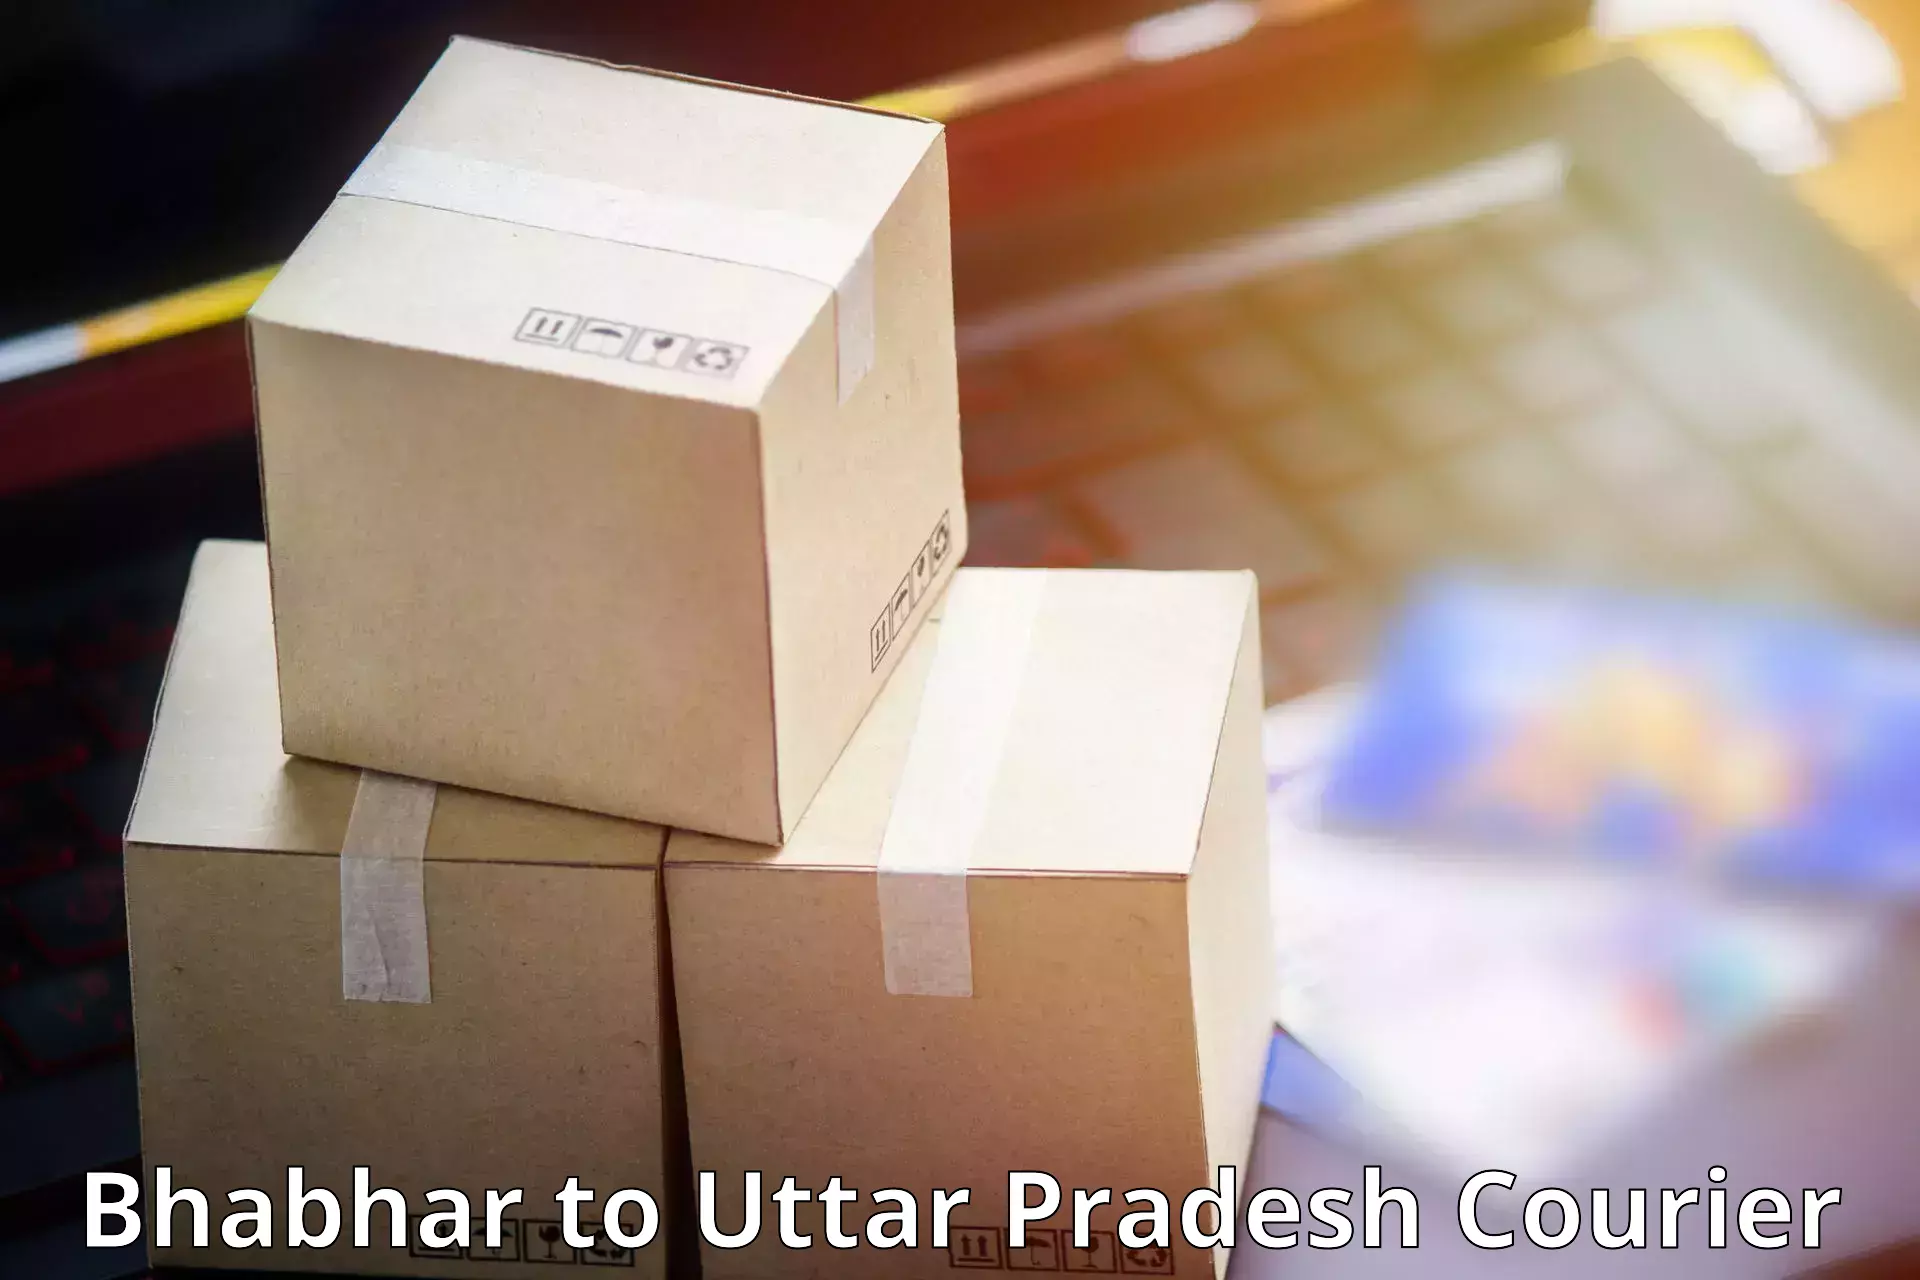 Flexible parcel services Bhabhar to Sikandra Rao